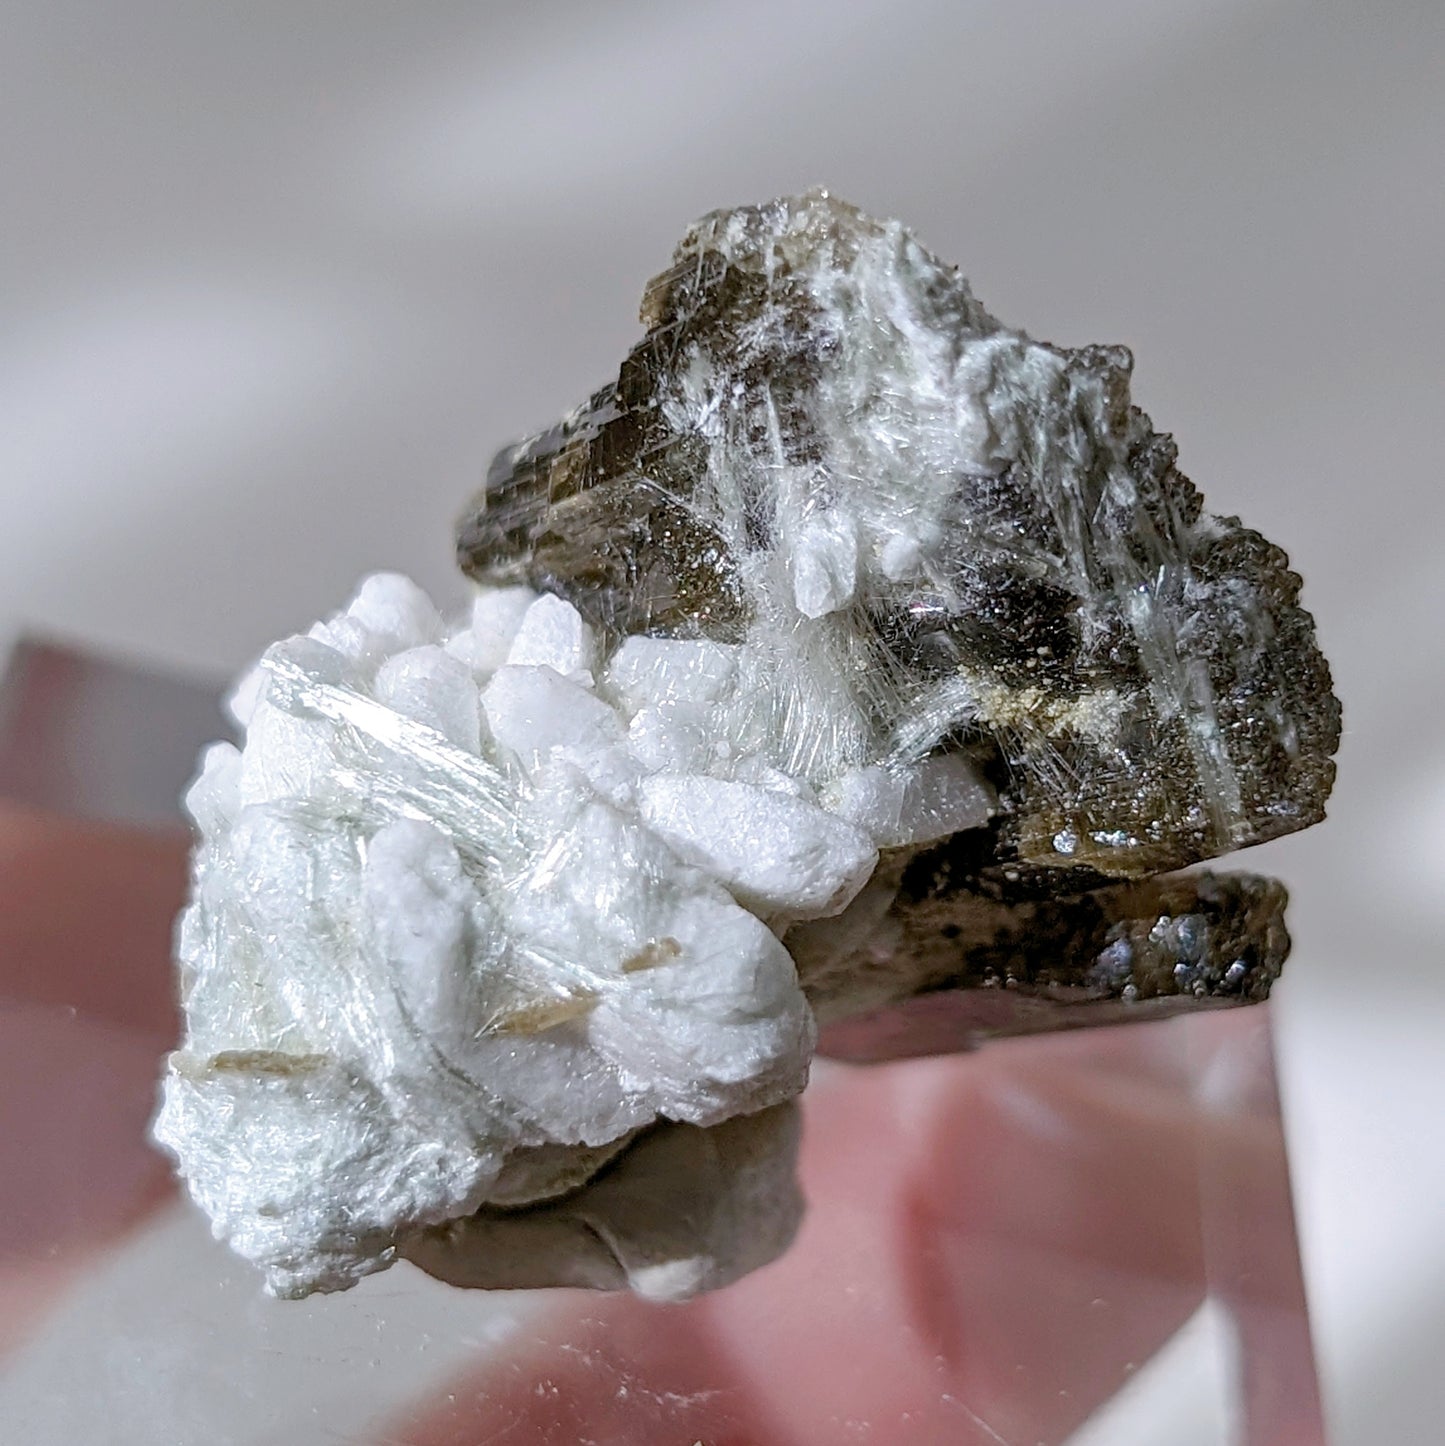 [EP07] Epidote with Byssolite and Albite mini specimen, Pakistan